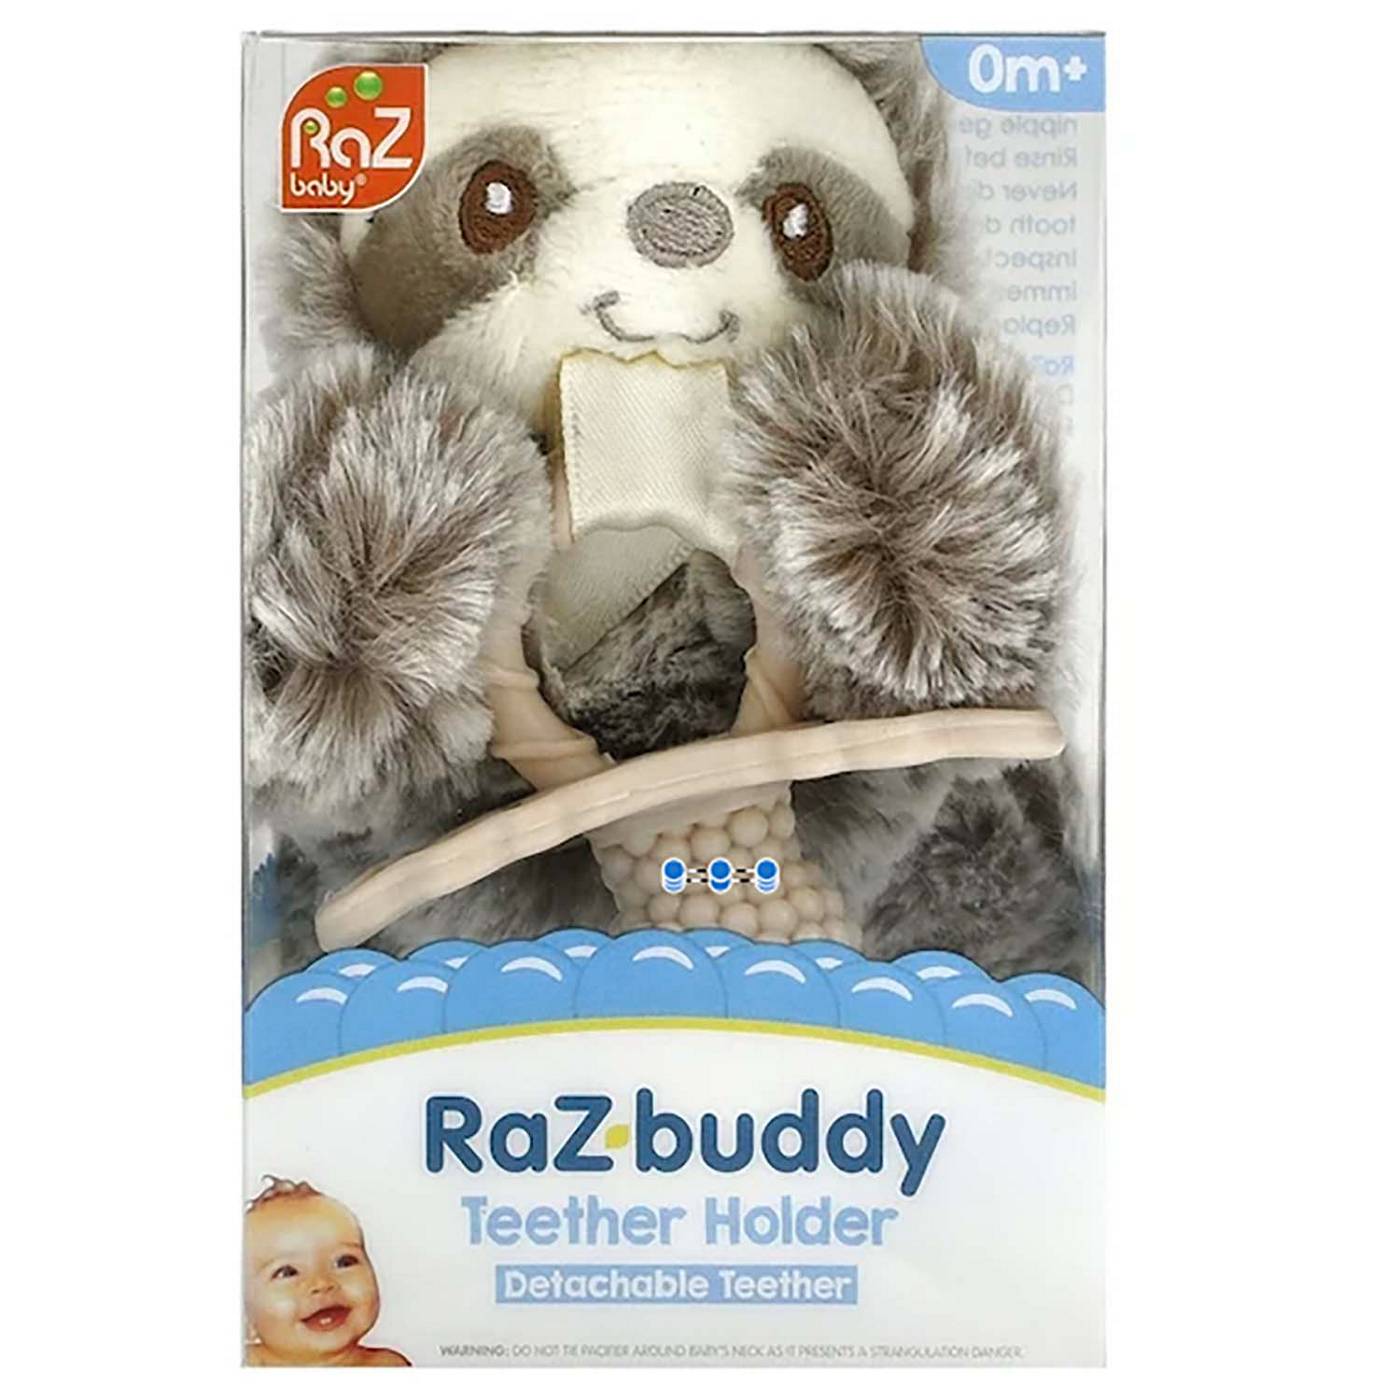 Razbaby Raz buddy Detachable Teether Holder; image 1 of 4